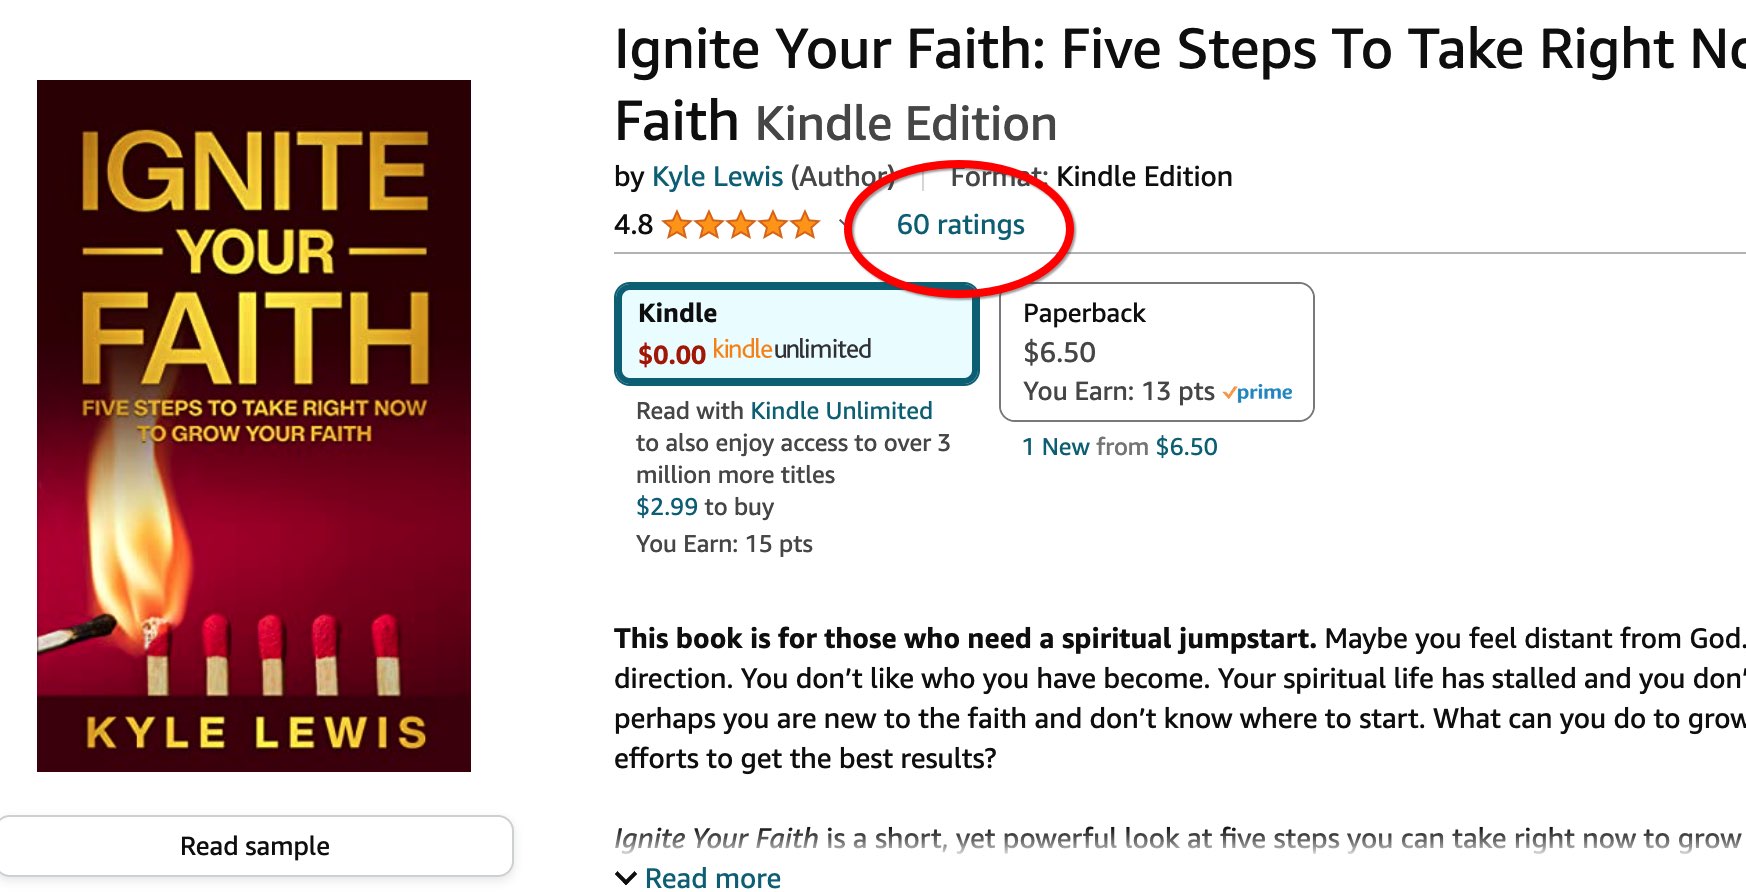 Ignite your faith 60 reviews